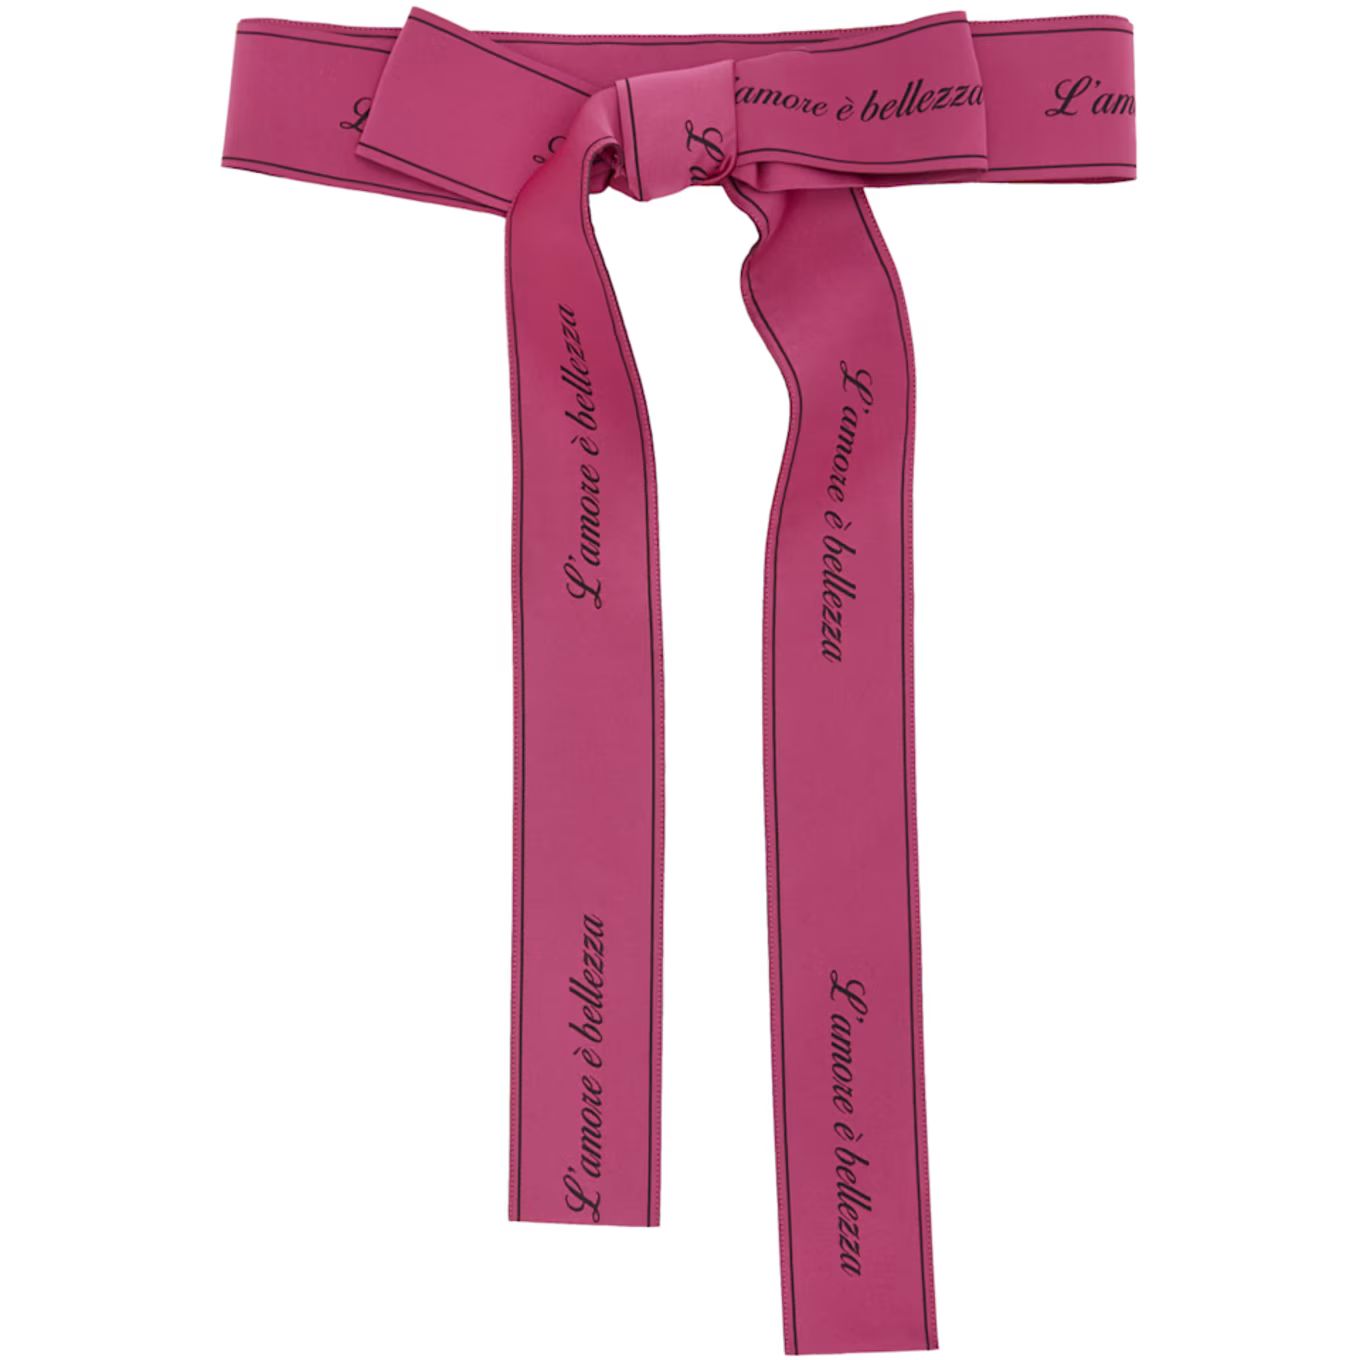 Dolce & Gabbana - Pink Ribbon 'L'Amore e Bellezza' Belt | SSENSE 